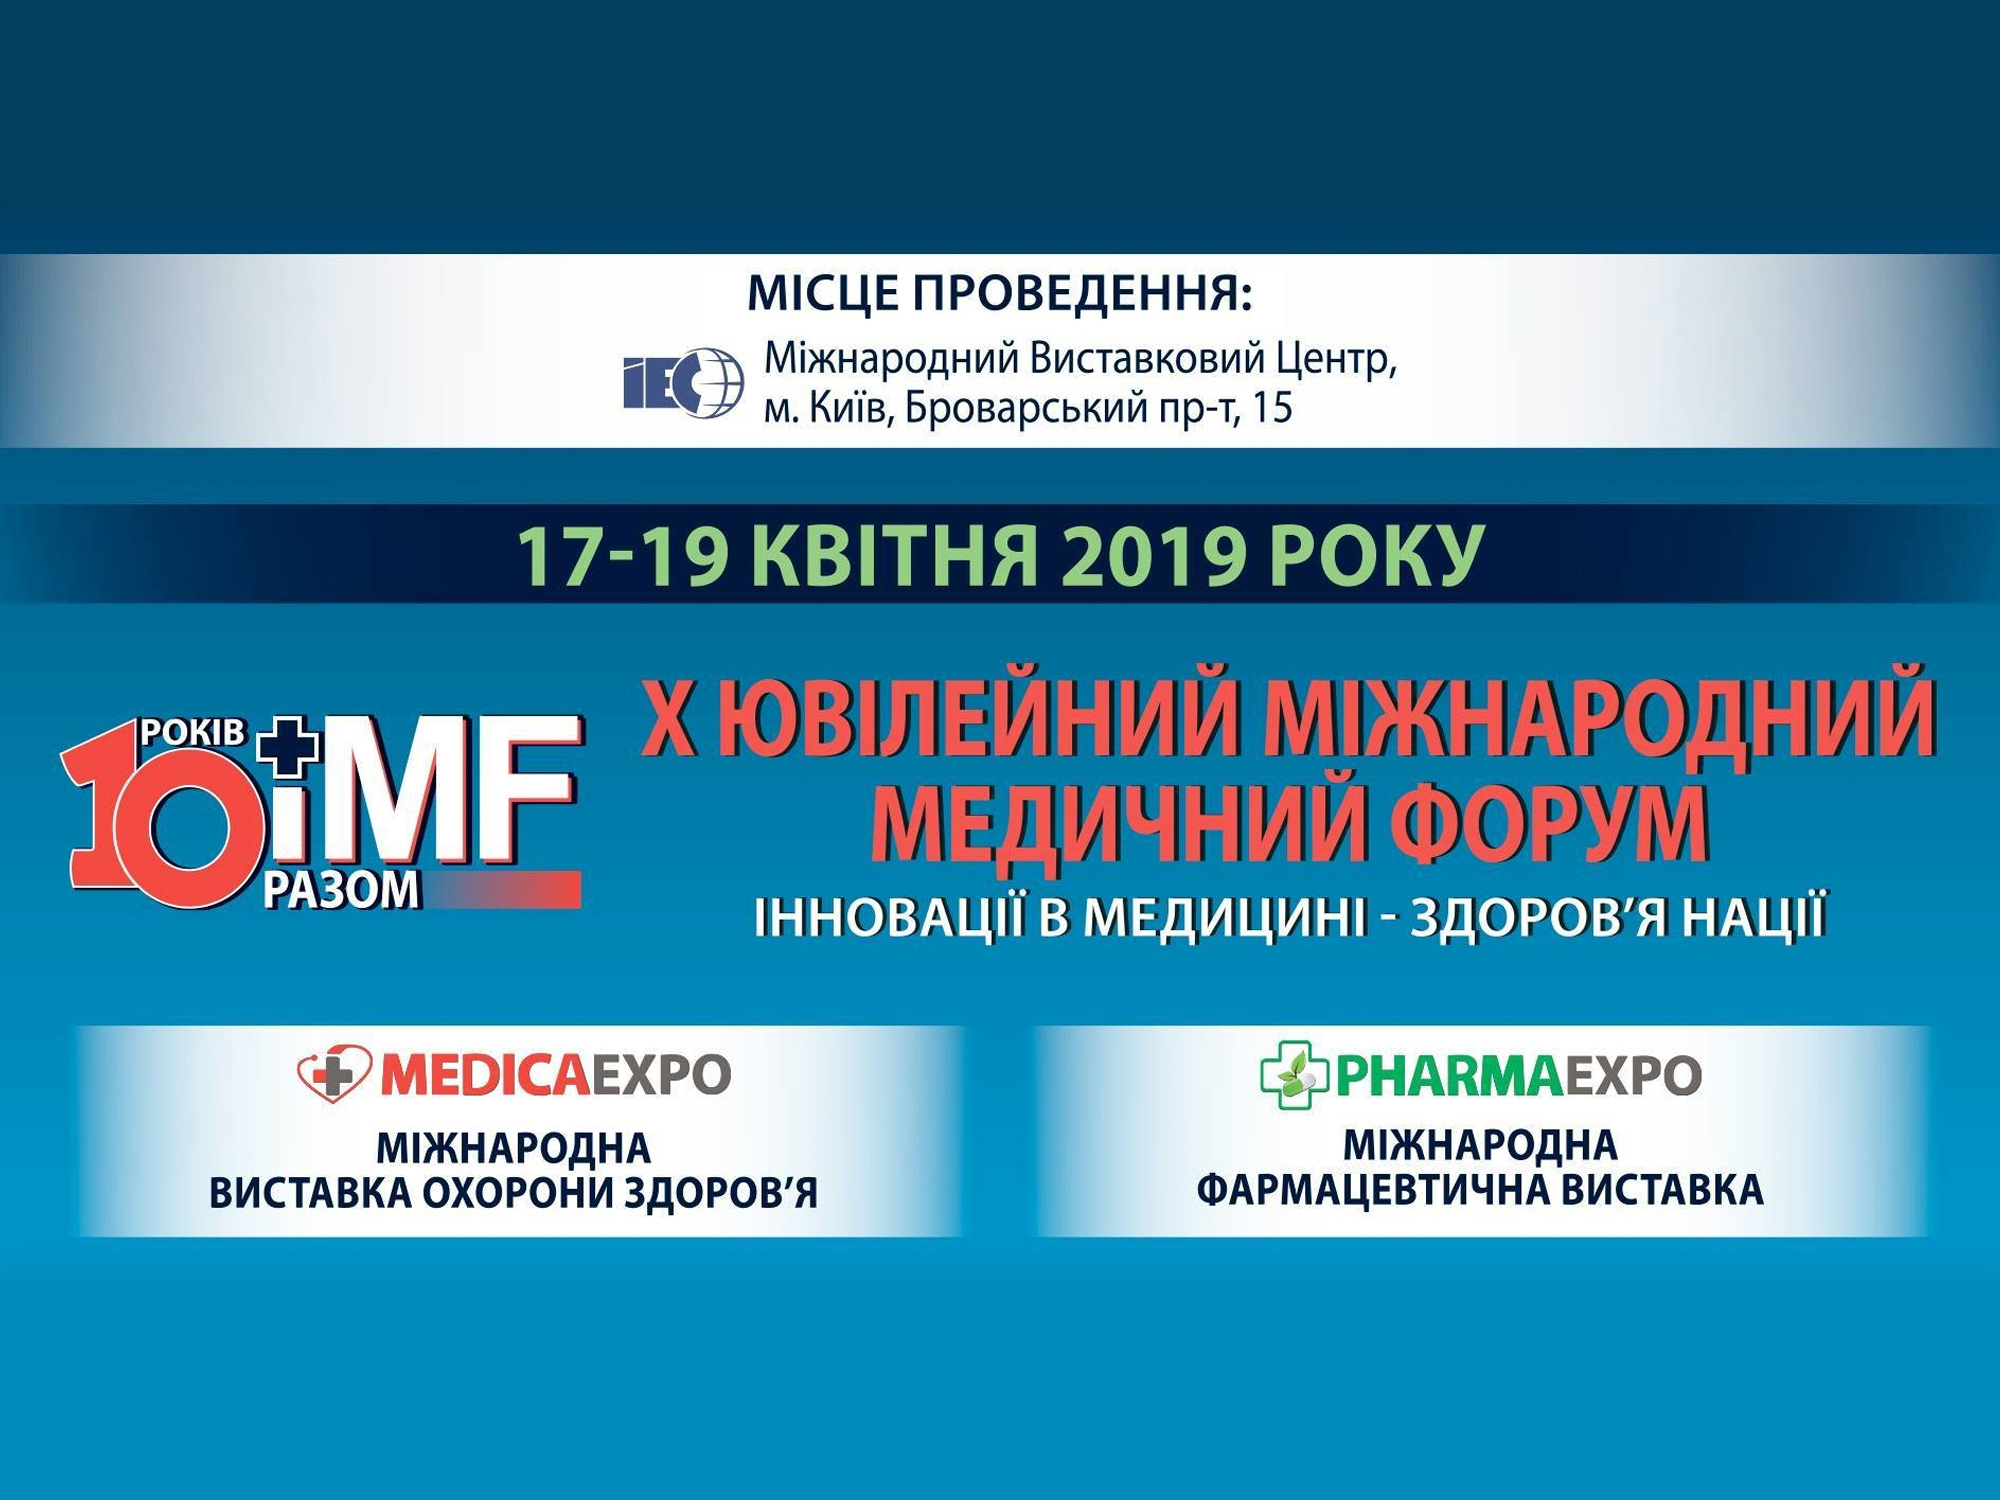 Международный Медицинский Форум 2019